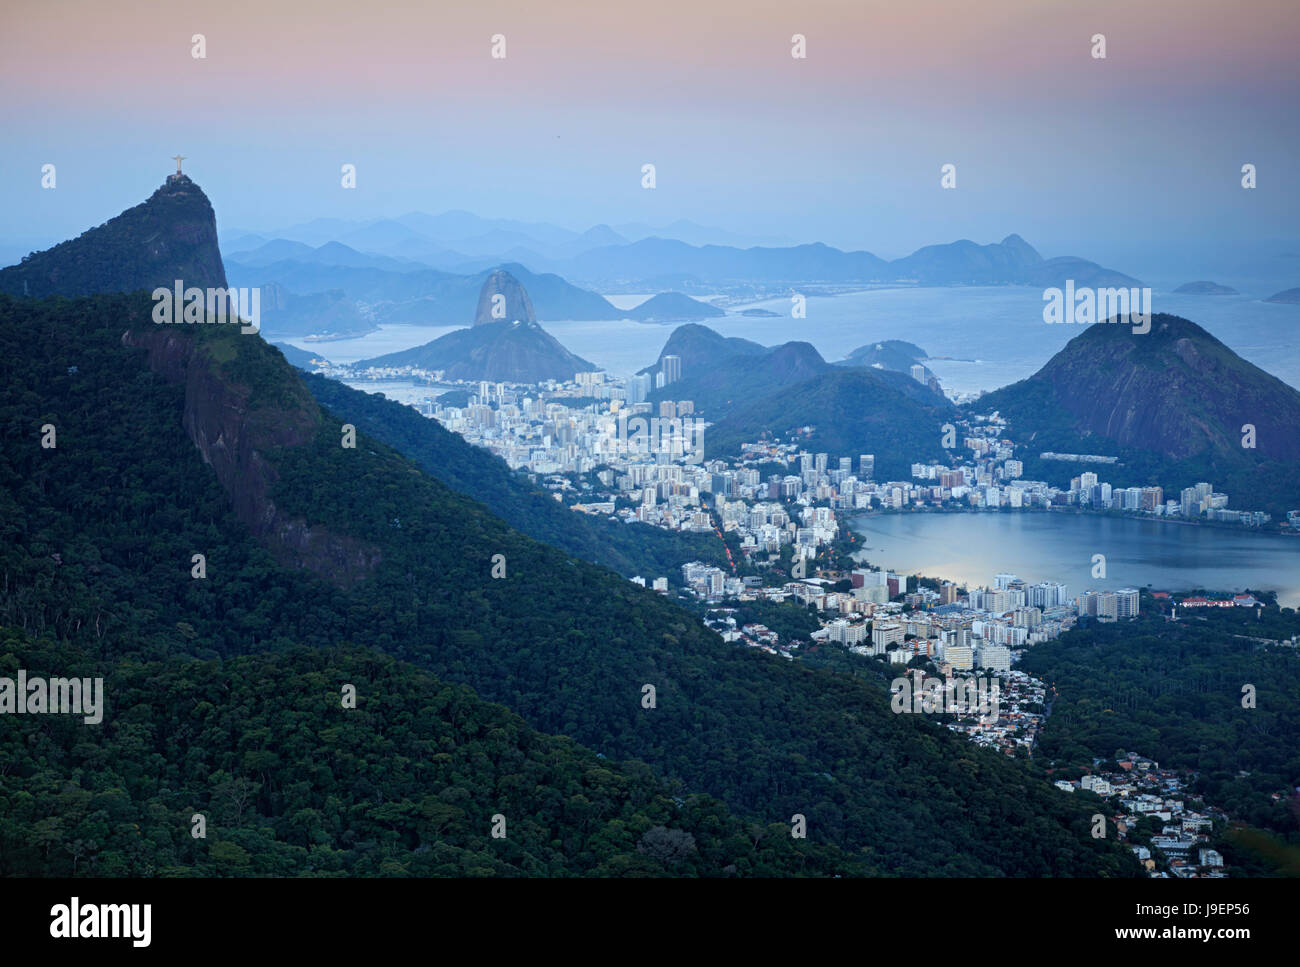 Rio de Janeiro paesaggio mostra Corcovado e il Cristo Redentore statua, Sugar Loaf, Baia di Guanabara e nella distanza Niteroi Foto Stock